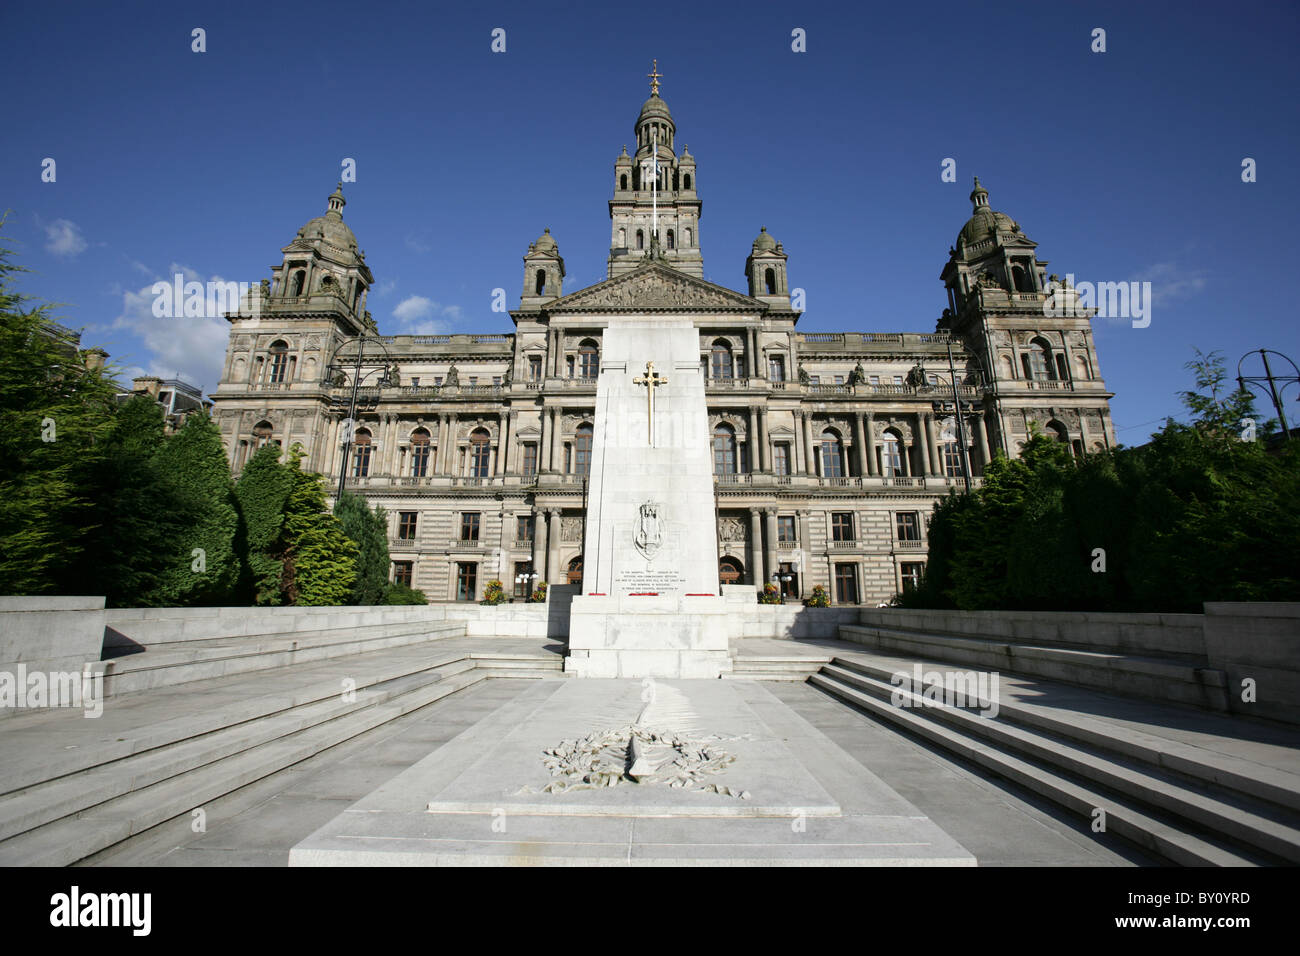 Stadt in Glasgow, Schottland. George Square Kenotaph mit City Chambers im Hintergrund. Stockfoto